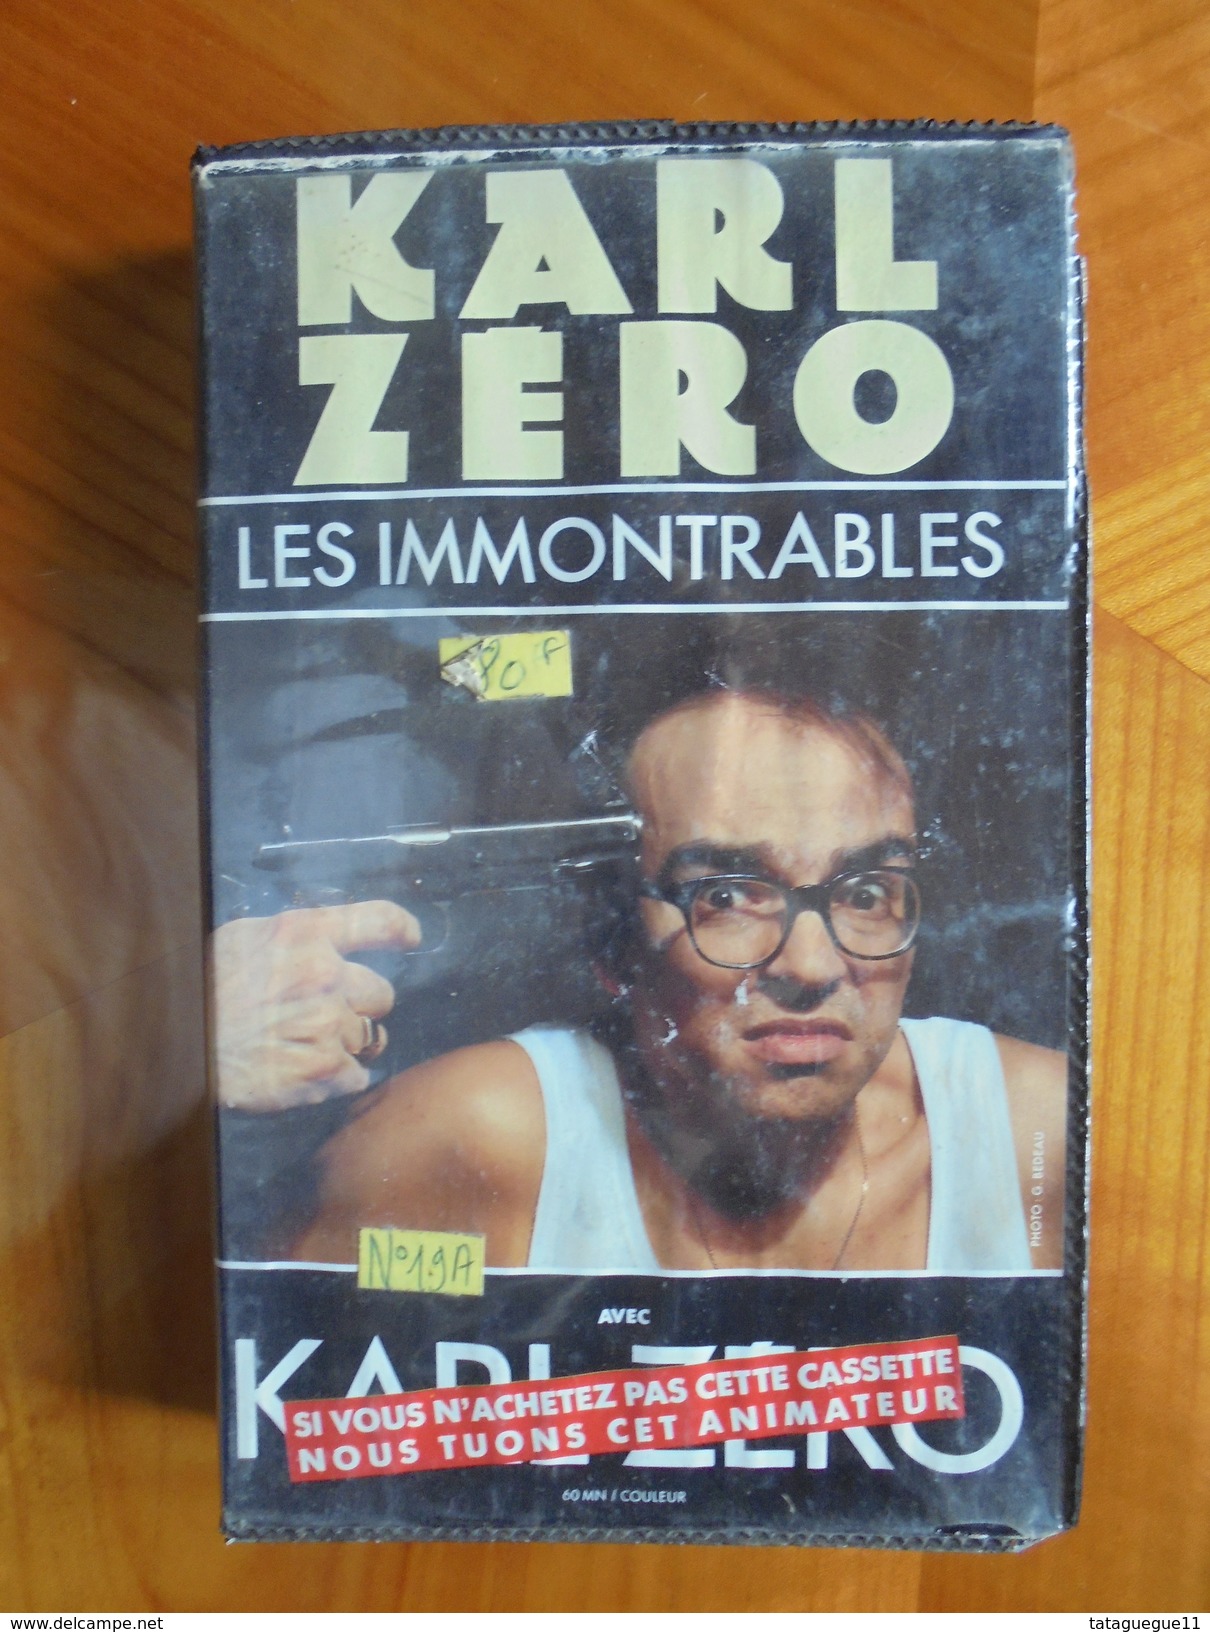 Ancien - Cassette Vidéo KARL ZERO Les Immontrables 1991 - Series Y Programas De TV